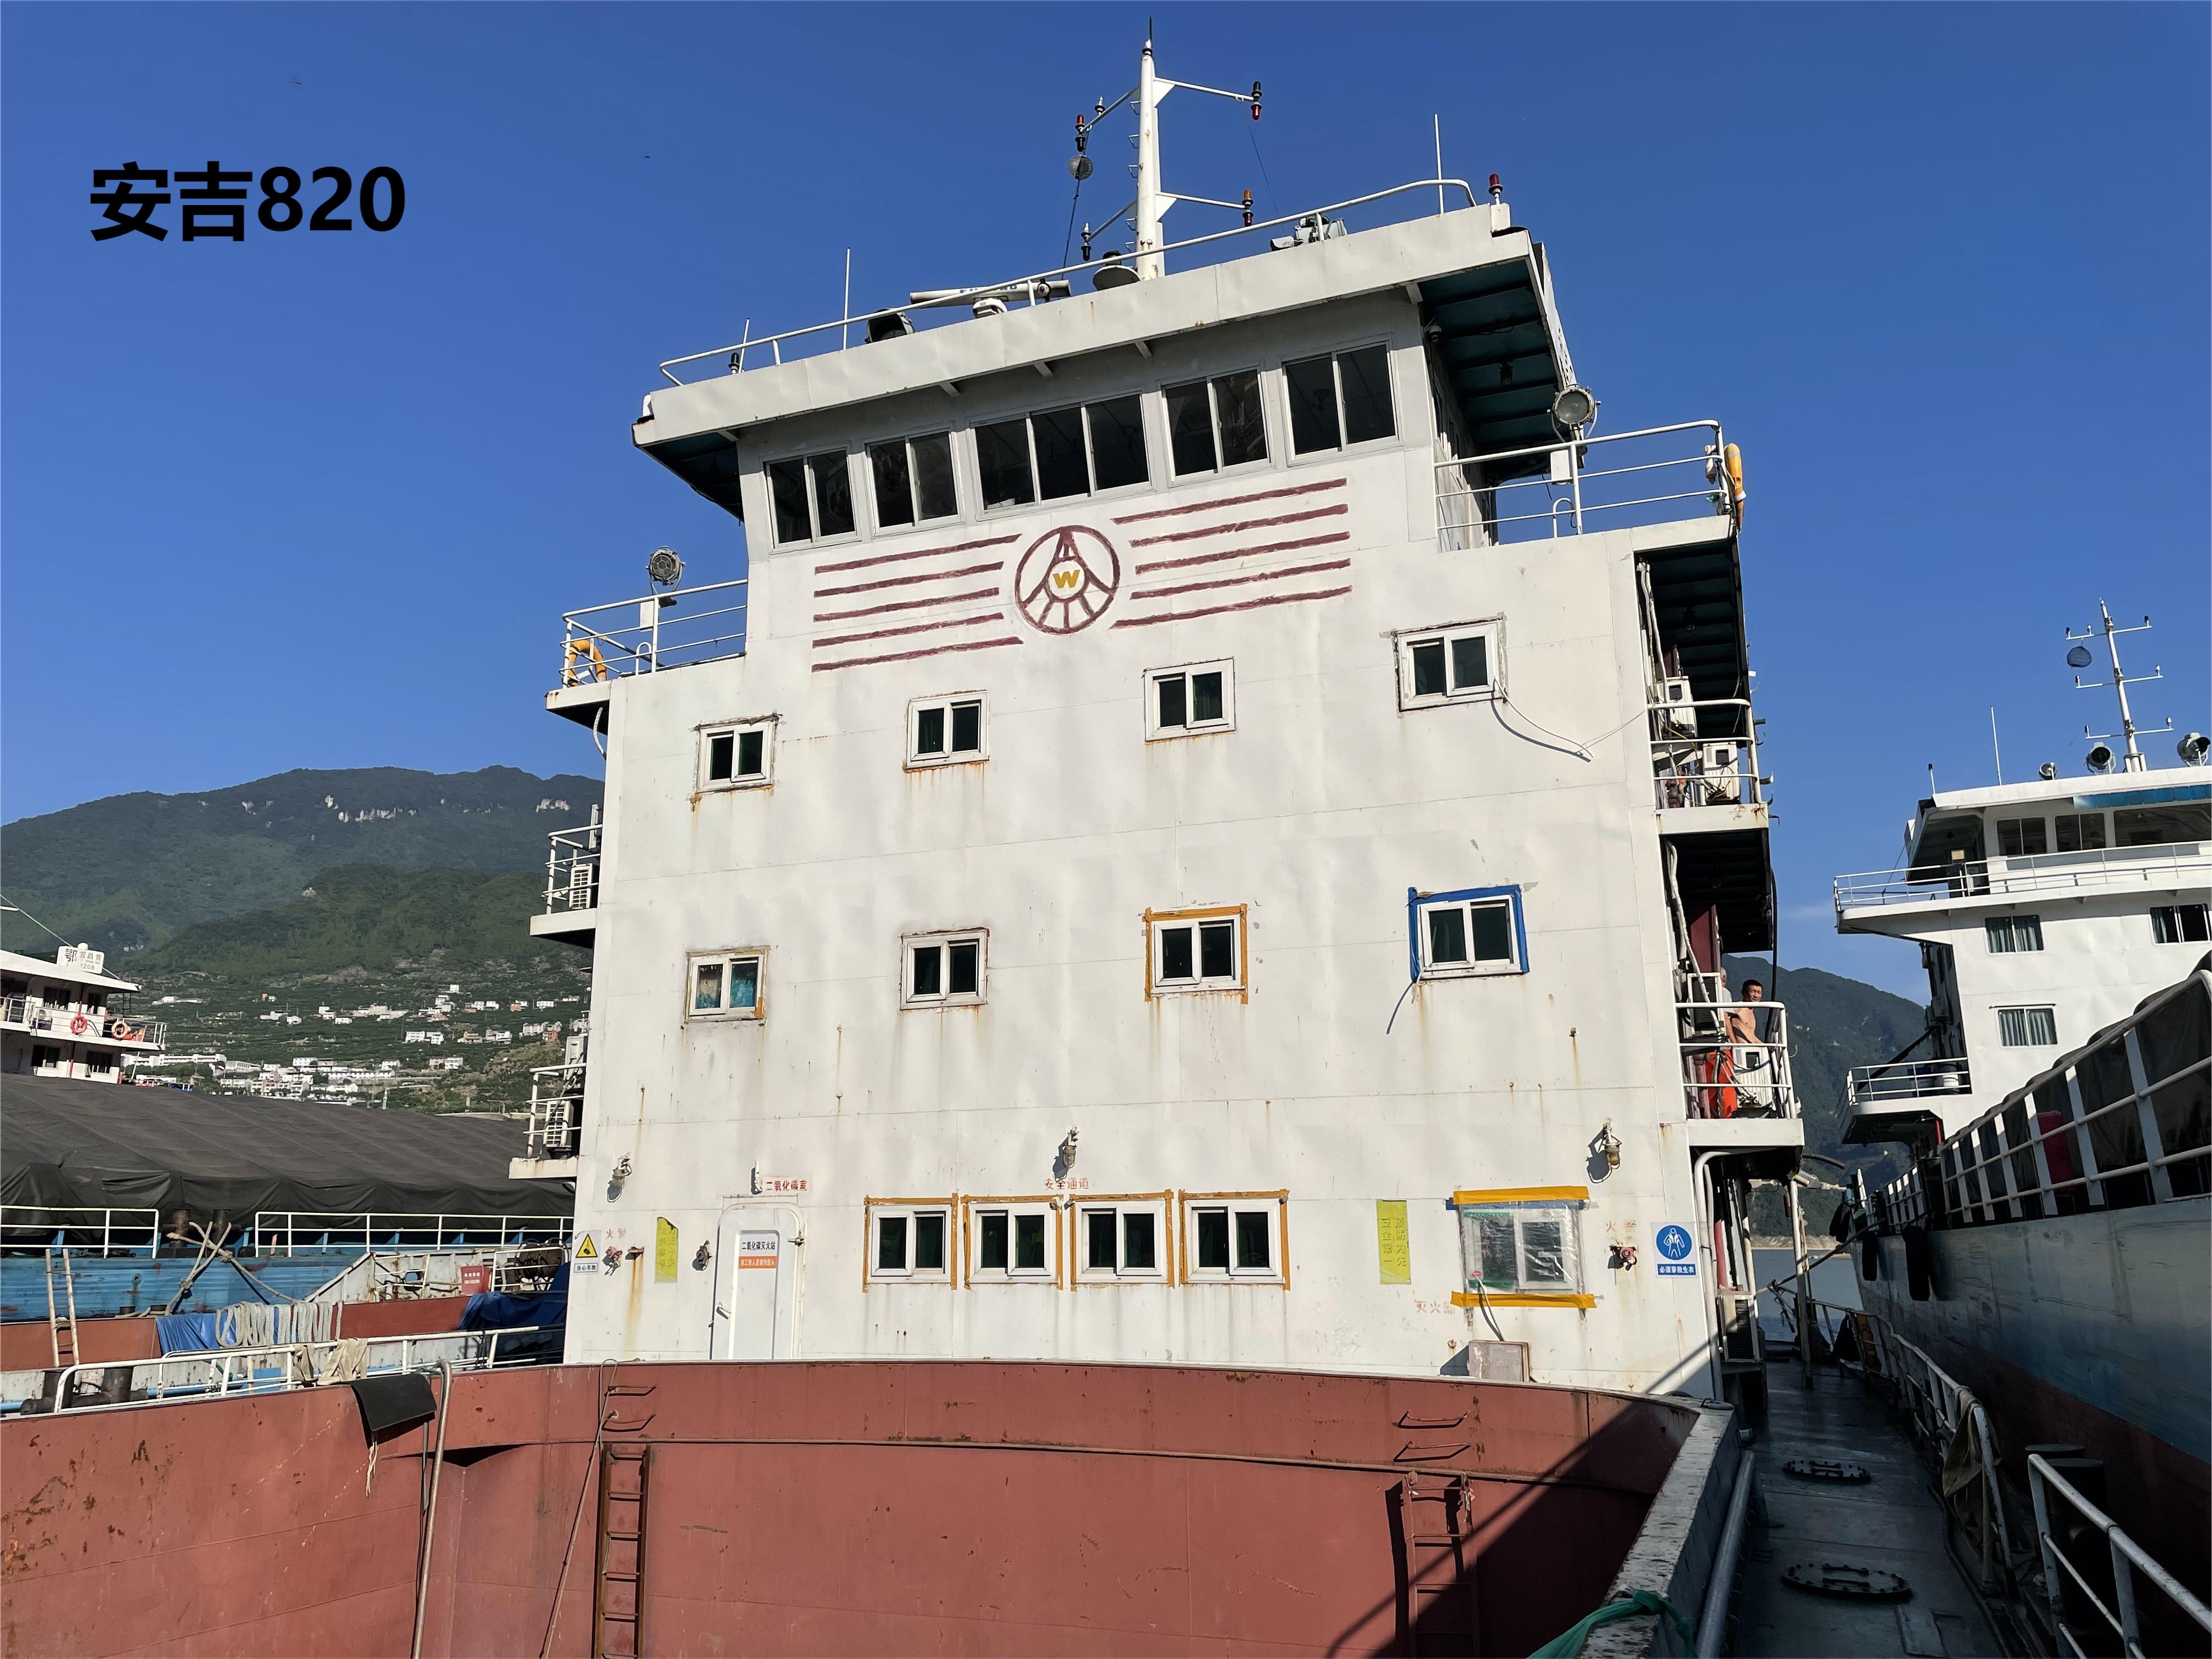 物流公司部分资产“安吉820”集装箱船及附属设施设备出售招标